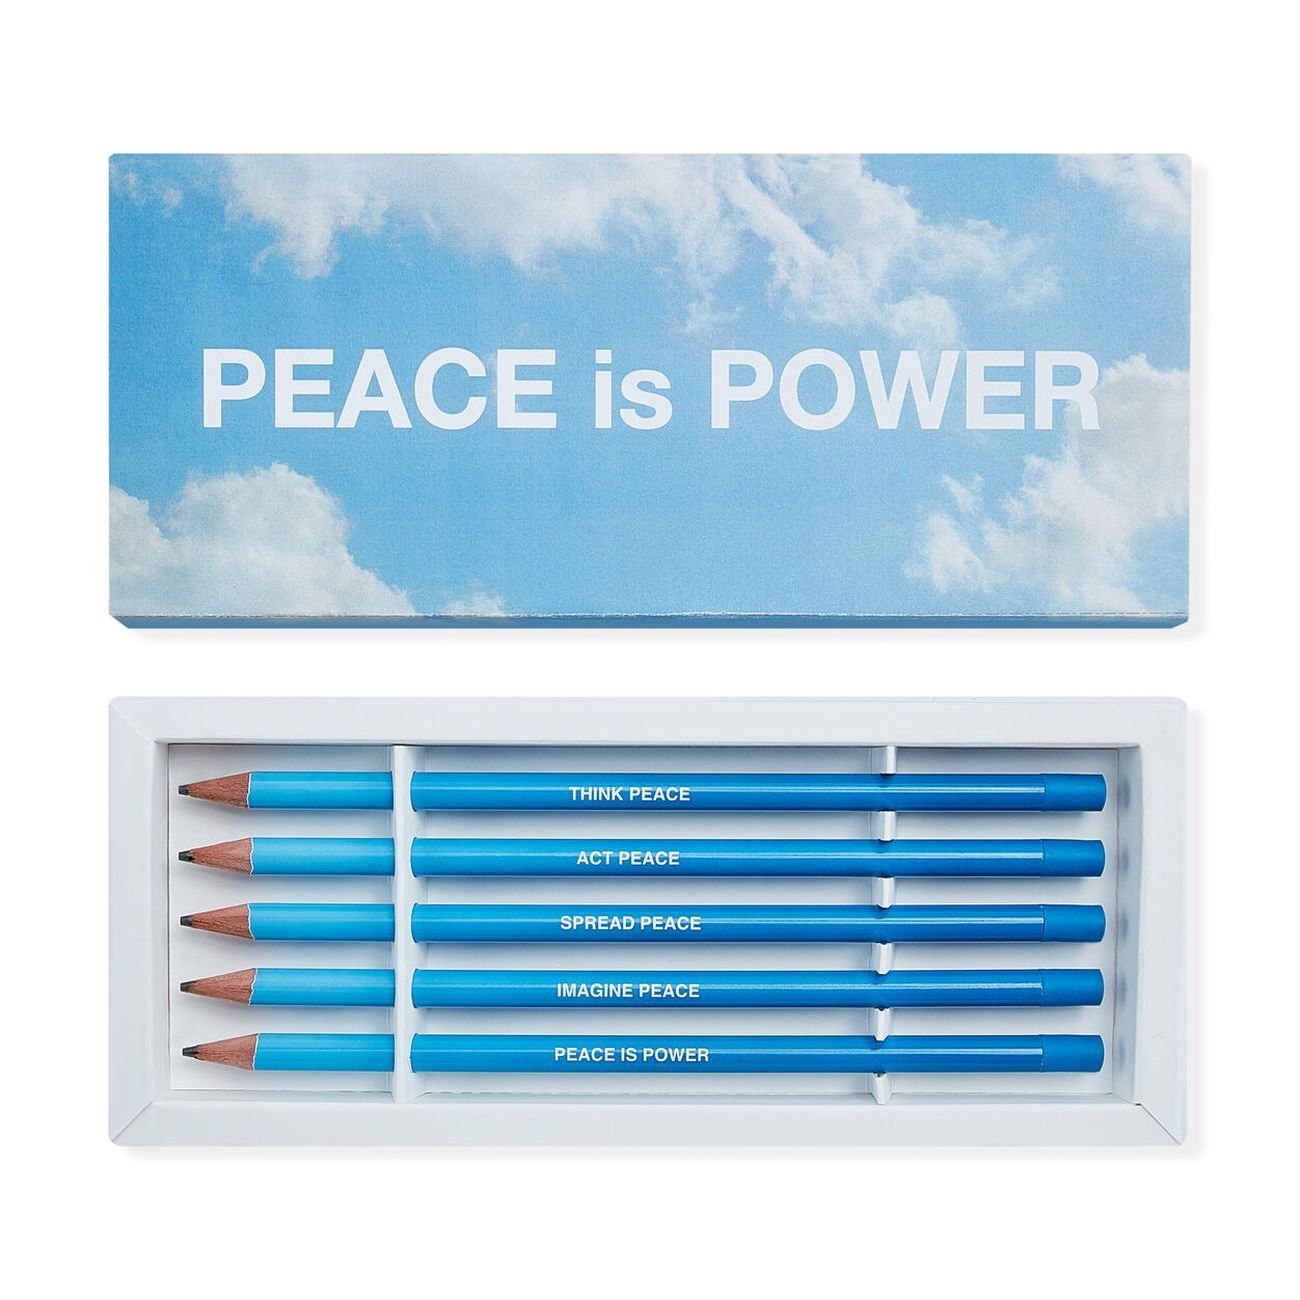 Le matite della pace di Yoko Ono